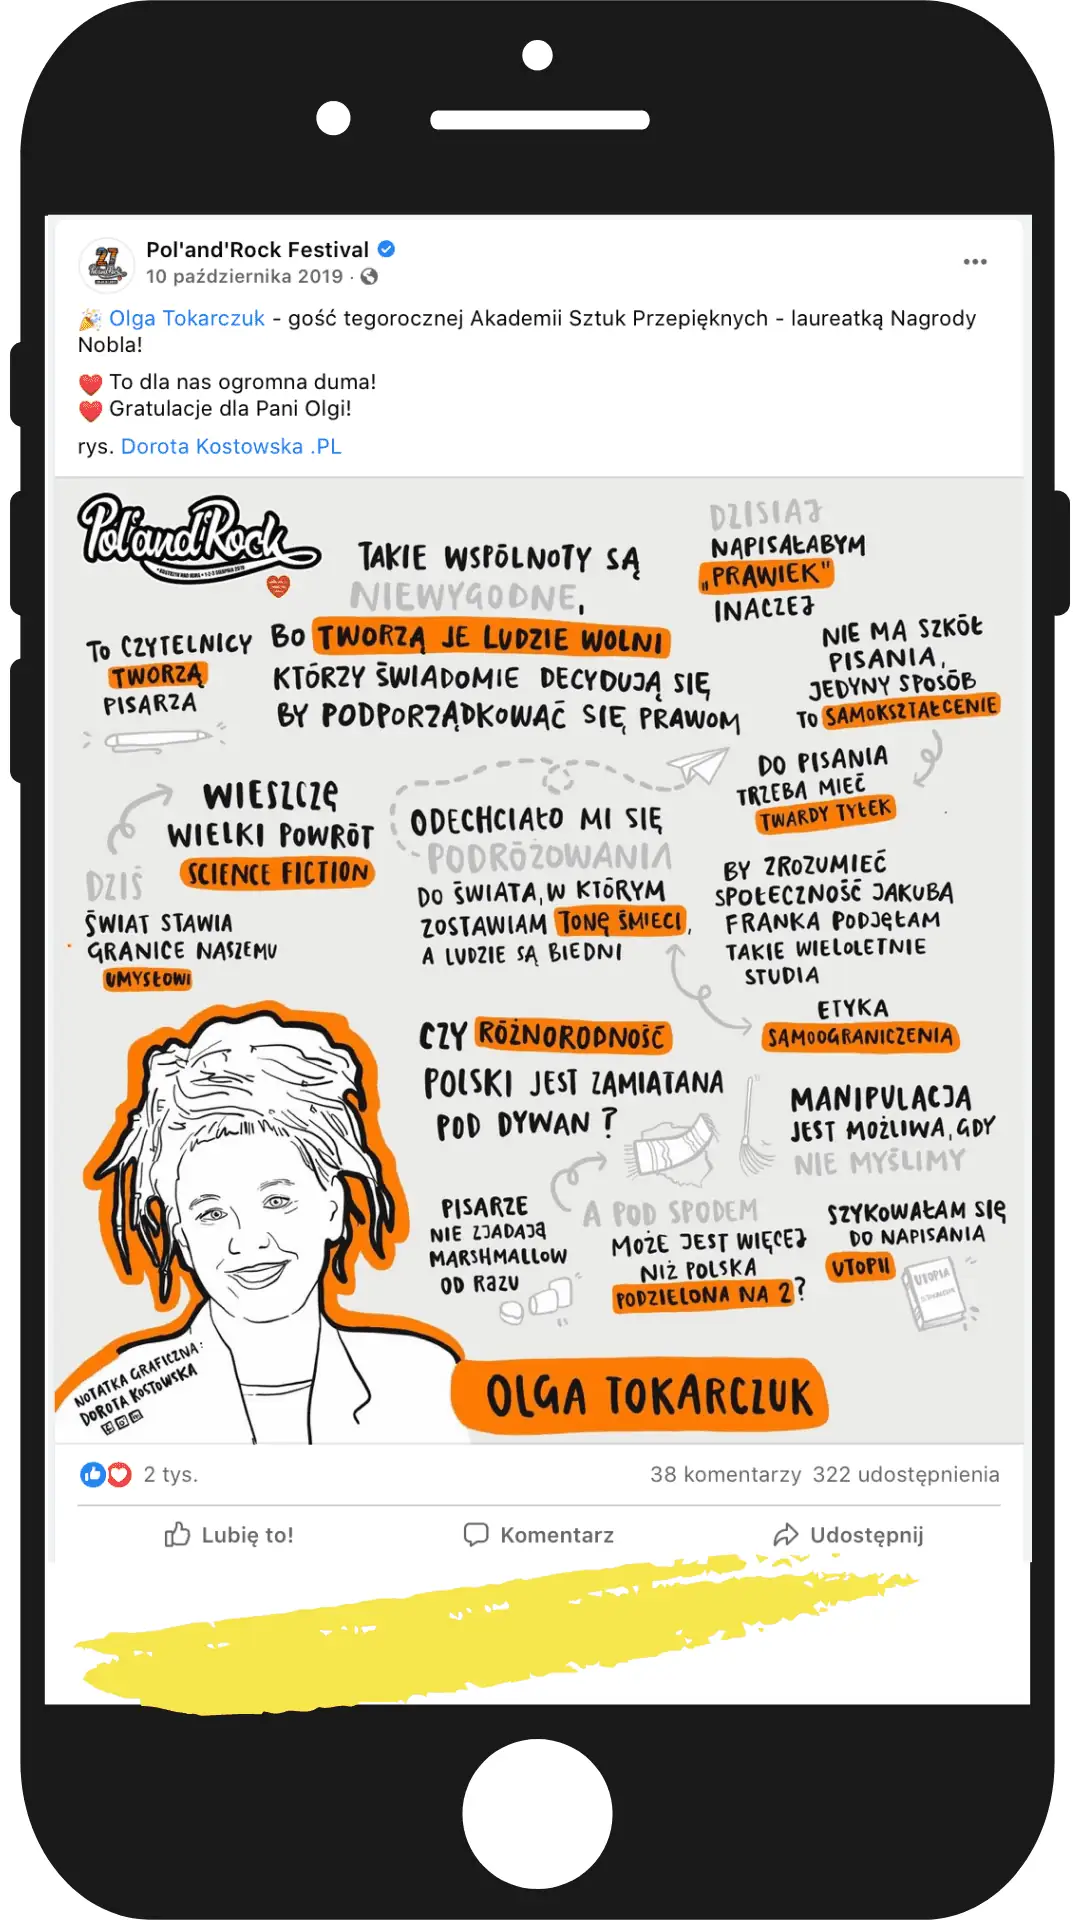 Notatka graficzna z portretem Olgi Tokarczuk z jej wystąpienia na festiwalu Polandrock jako post w social media